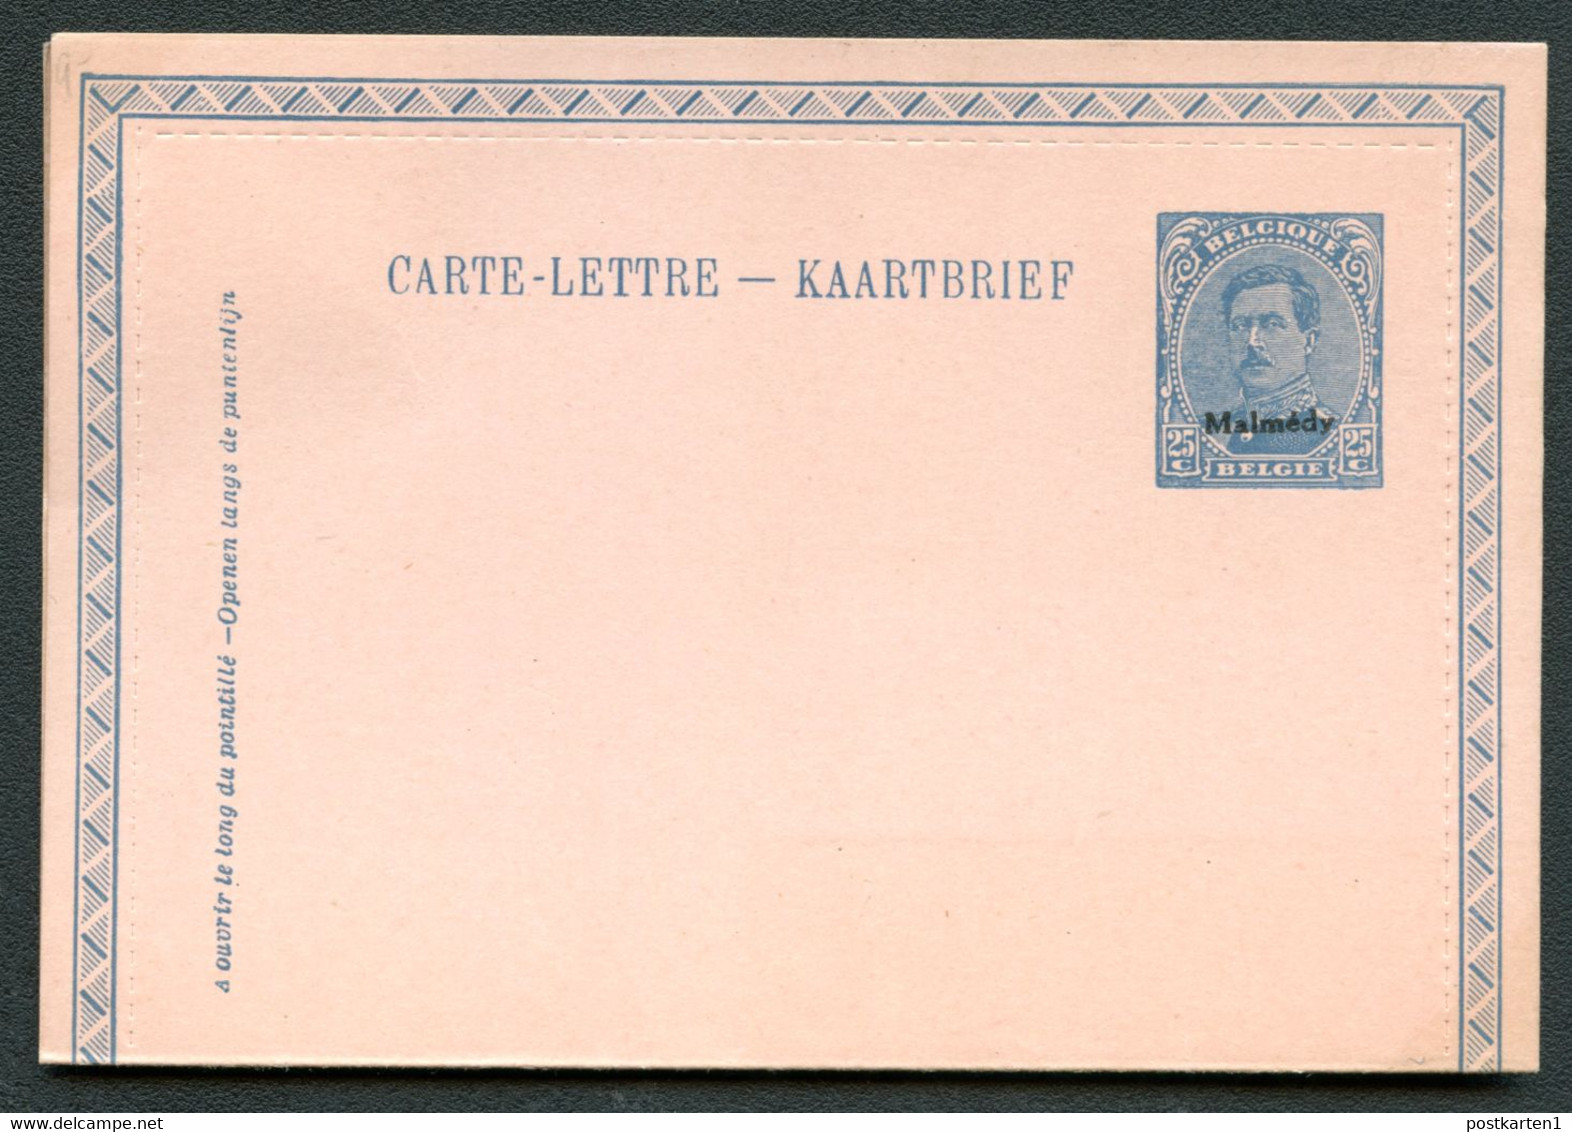 MALMÉDY Carte-lettre KB3 1920 Cat. 20.00 € - Eupen U. Malmedy